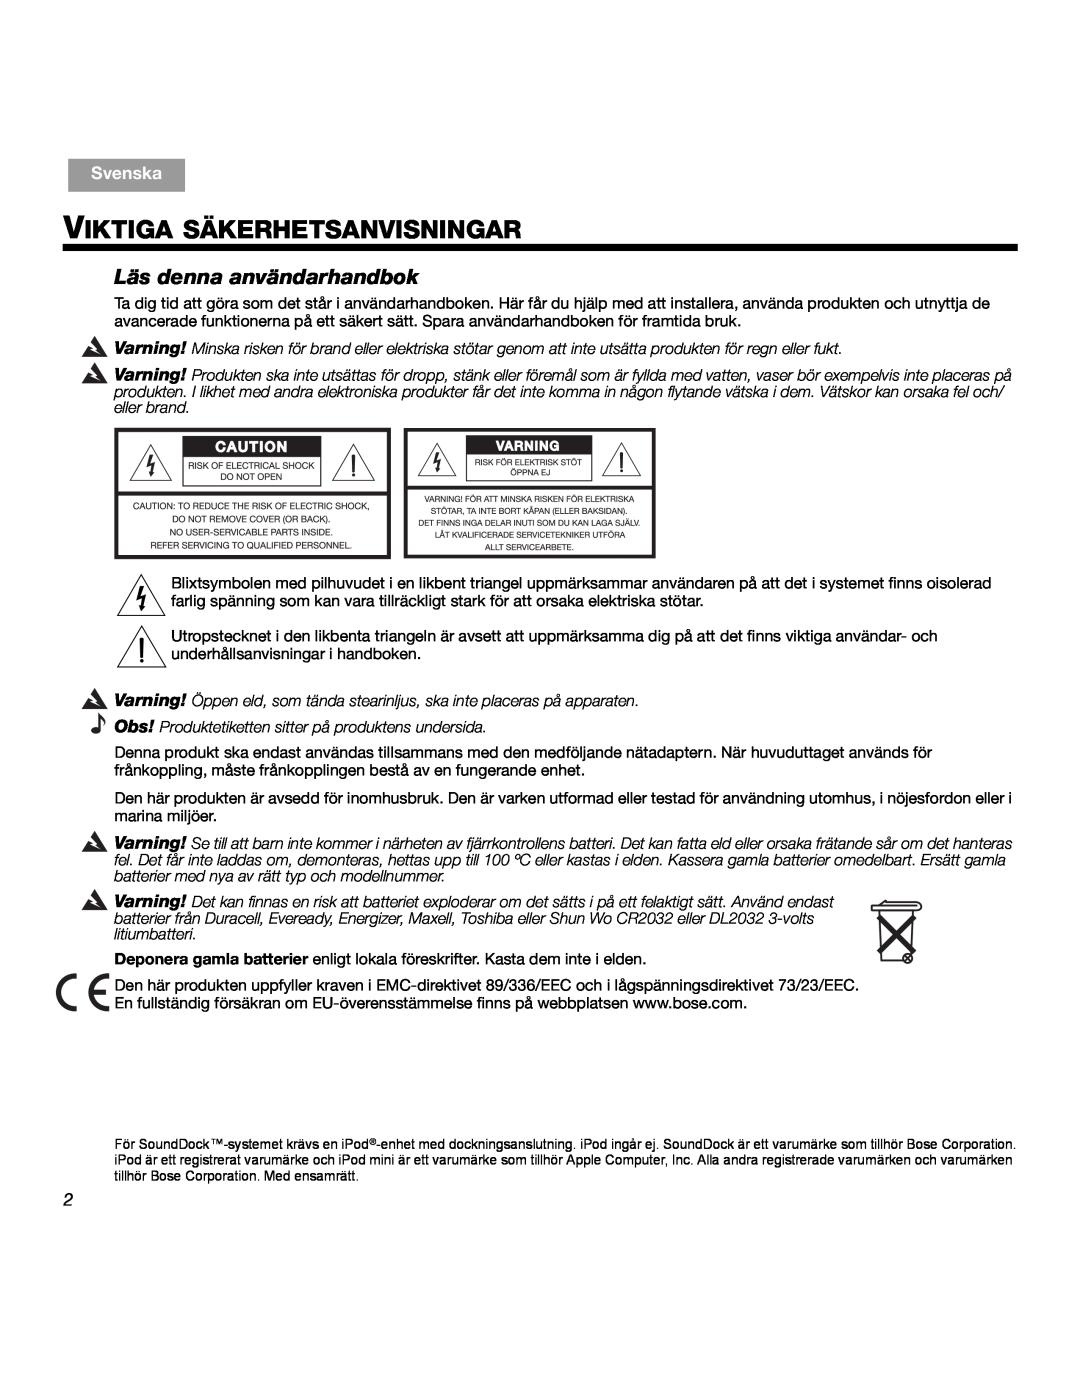 Bose SOUNDDOCKTM manual Viktiga Säkerhetsanvisningar, Läs denna användarhandbok, Svenska 